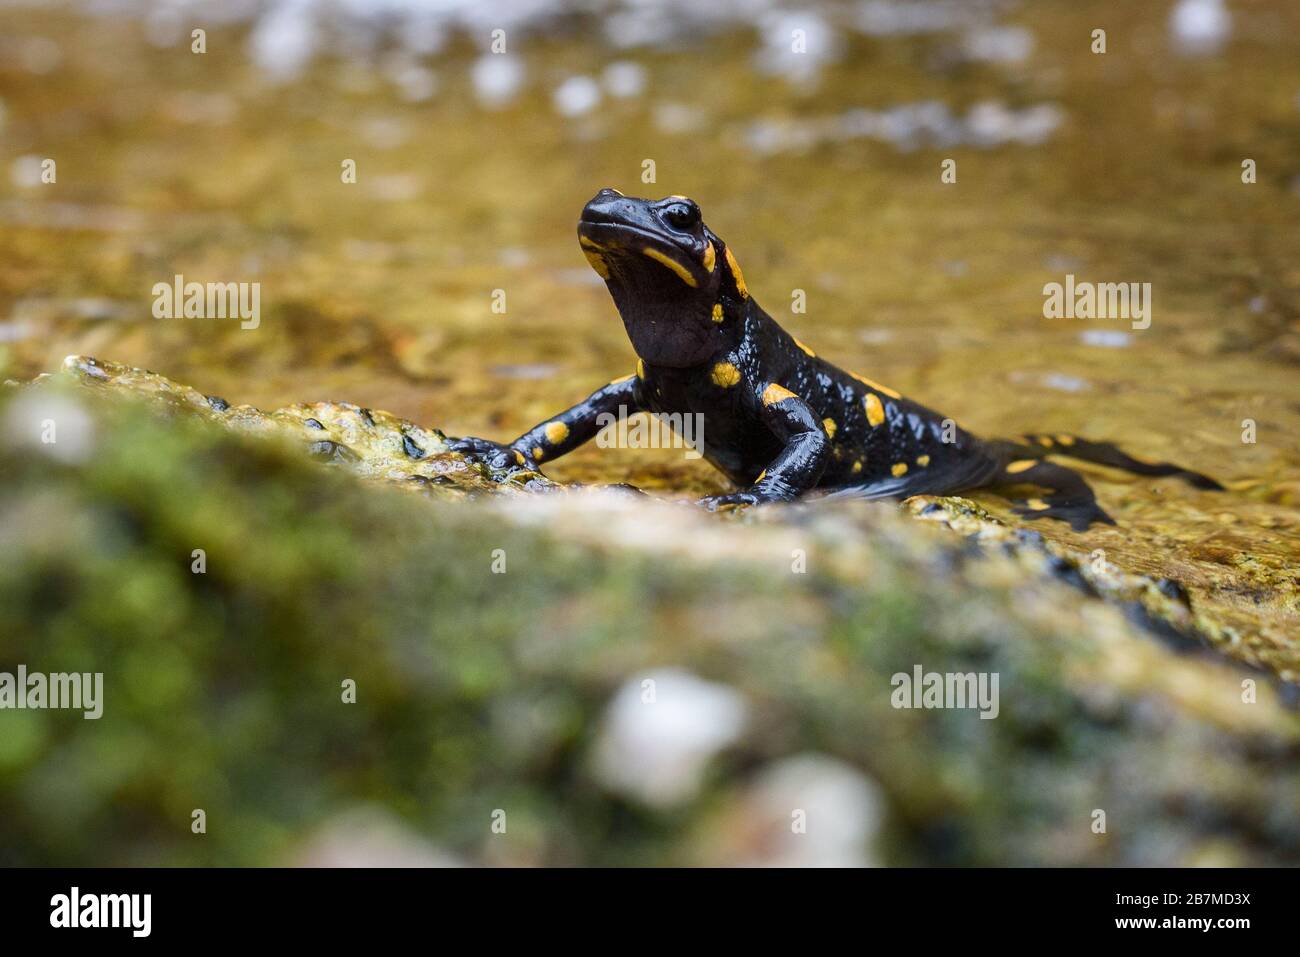 Porträt des Feuersalamanders in Flusswasser natürliche Umgebung. Kleine orangefarbene schwarze amphibische Echse in Nahaufnahme des natürlichen Lebensraums. Vrh Stockfoto